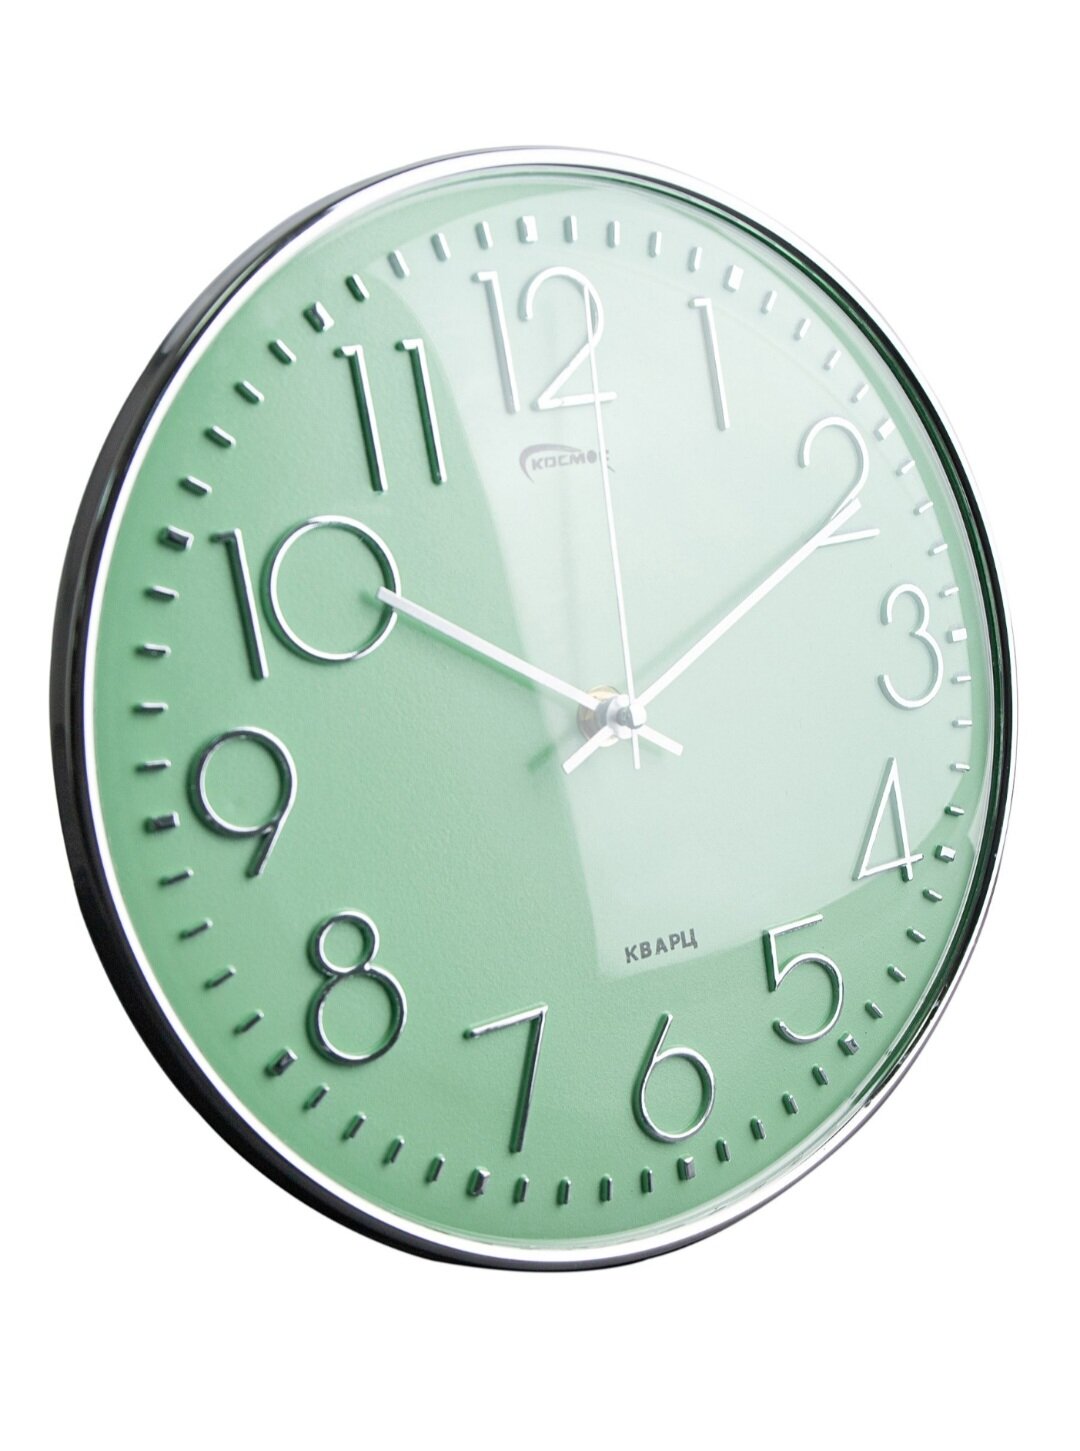 Часы настенные с плавным ходом на кухню / круглые часы 20 см / Космос / розовые часы